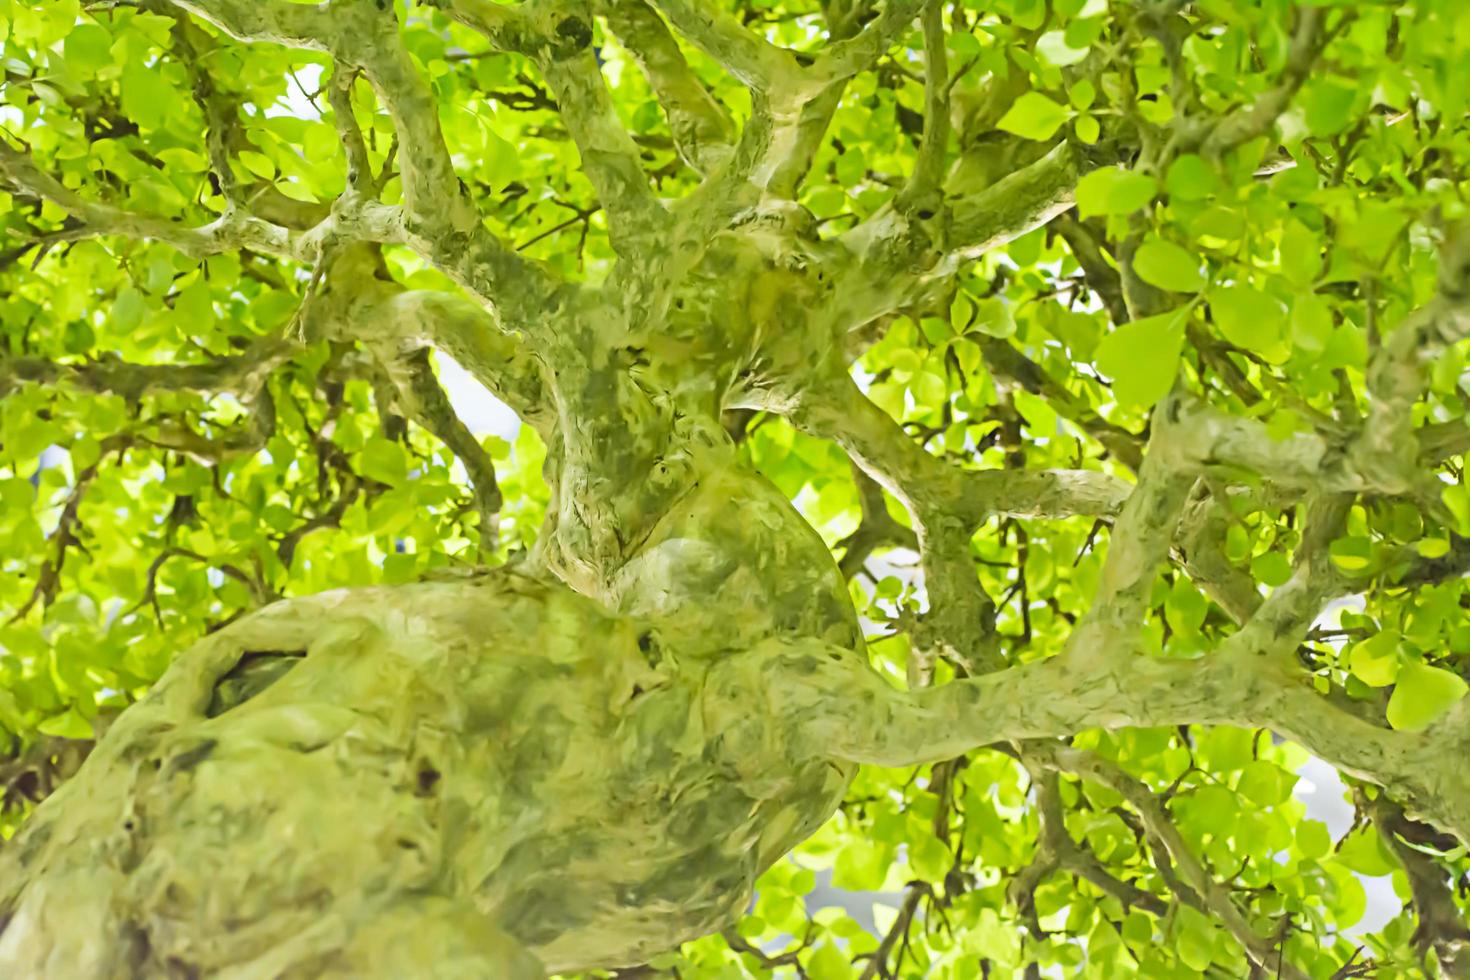 piccolo albero, coltivato con tecnica tailandese di bonsai. foto